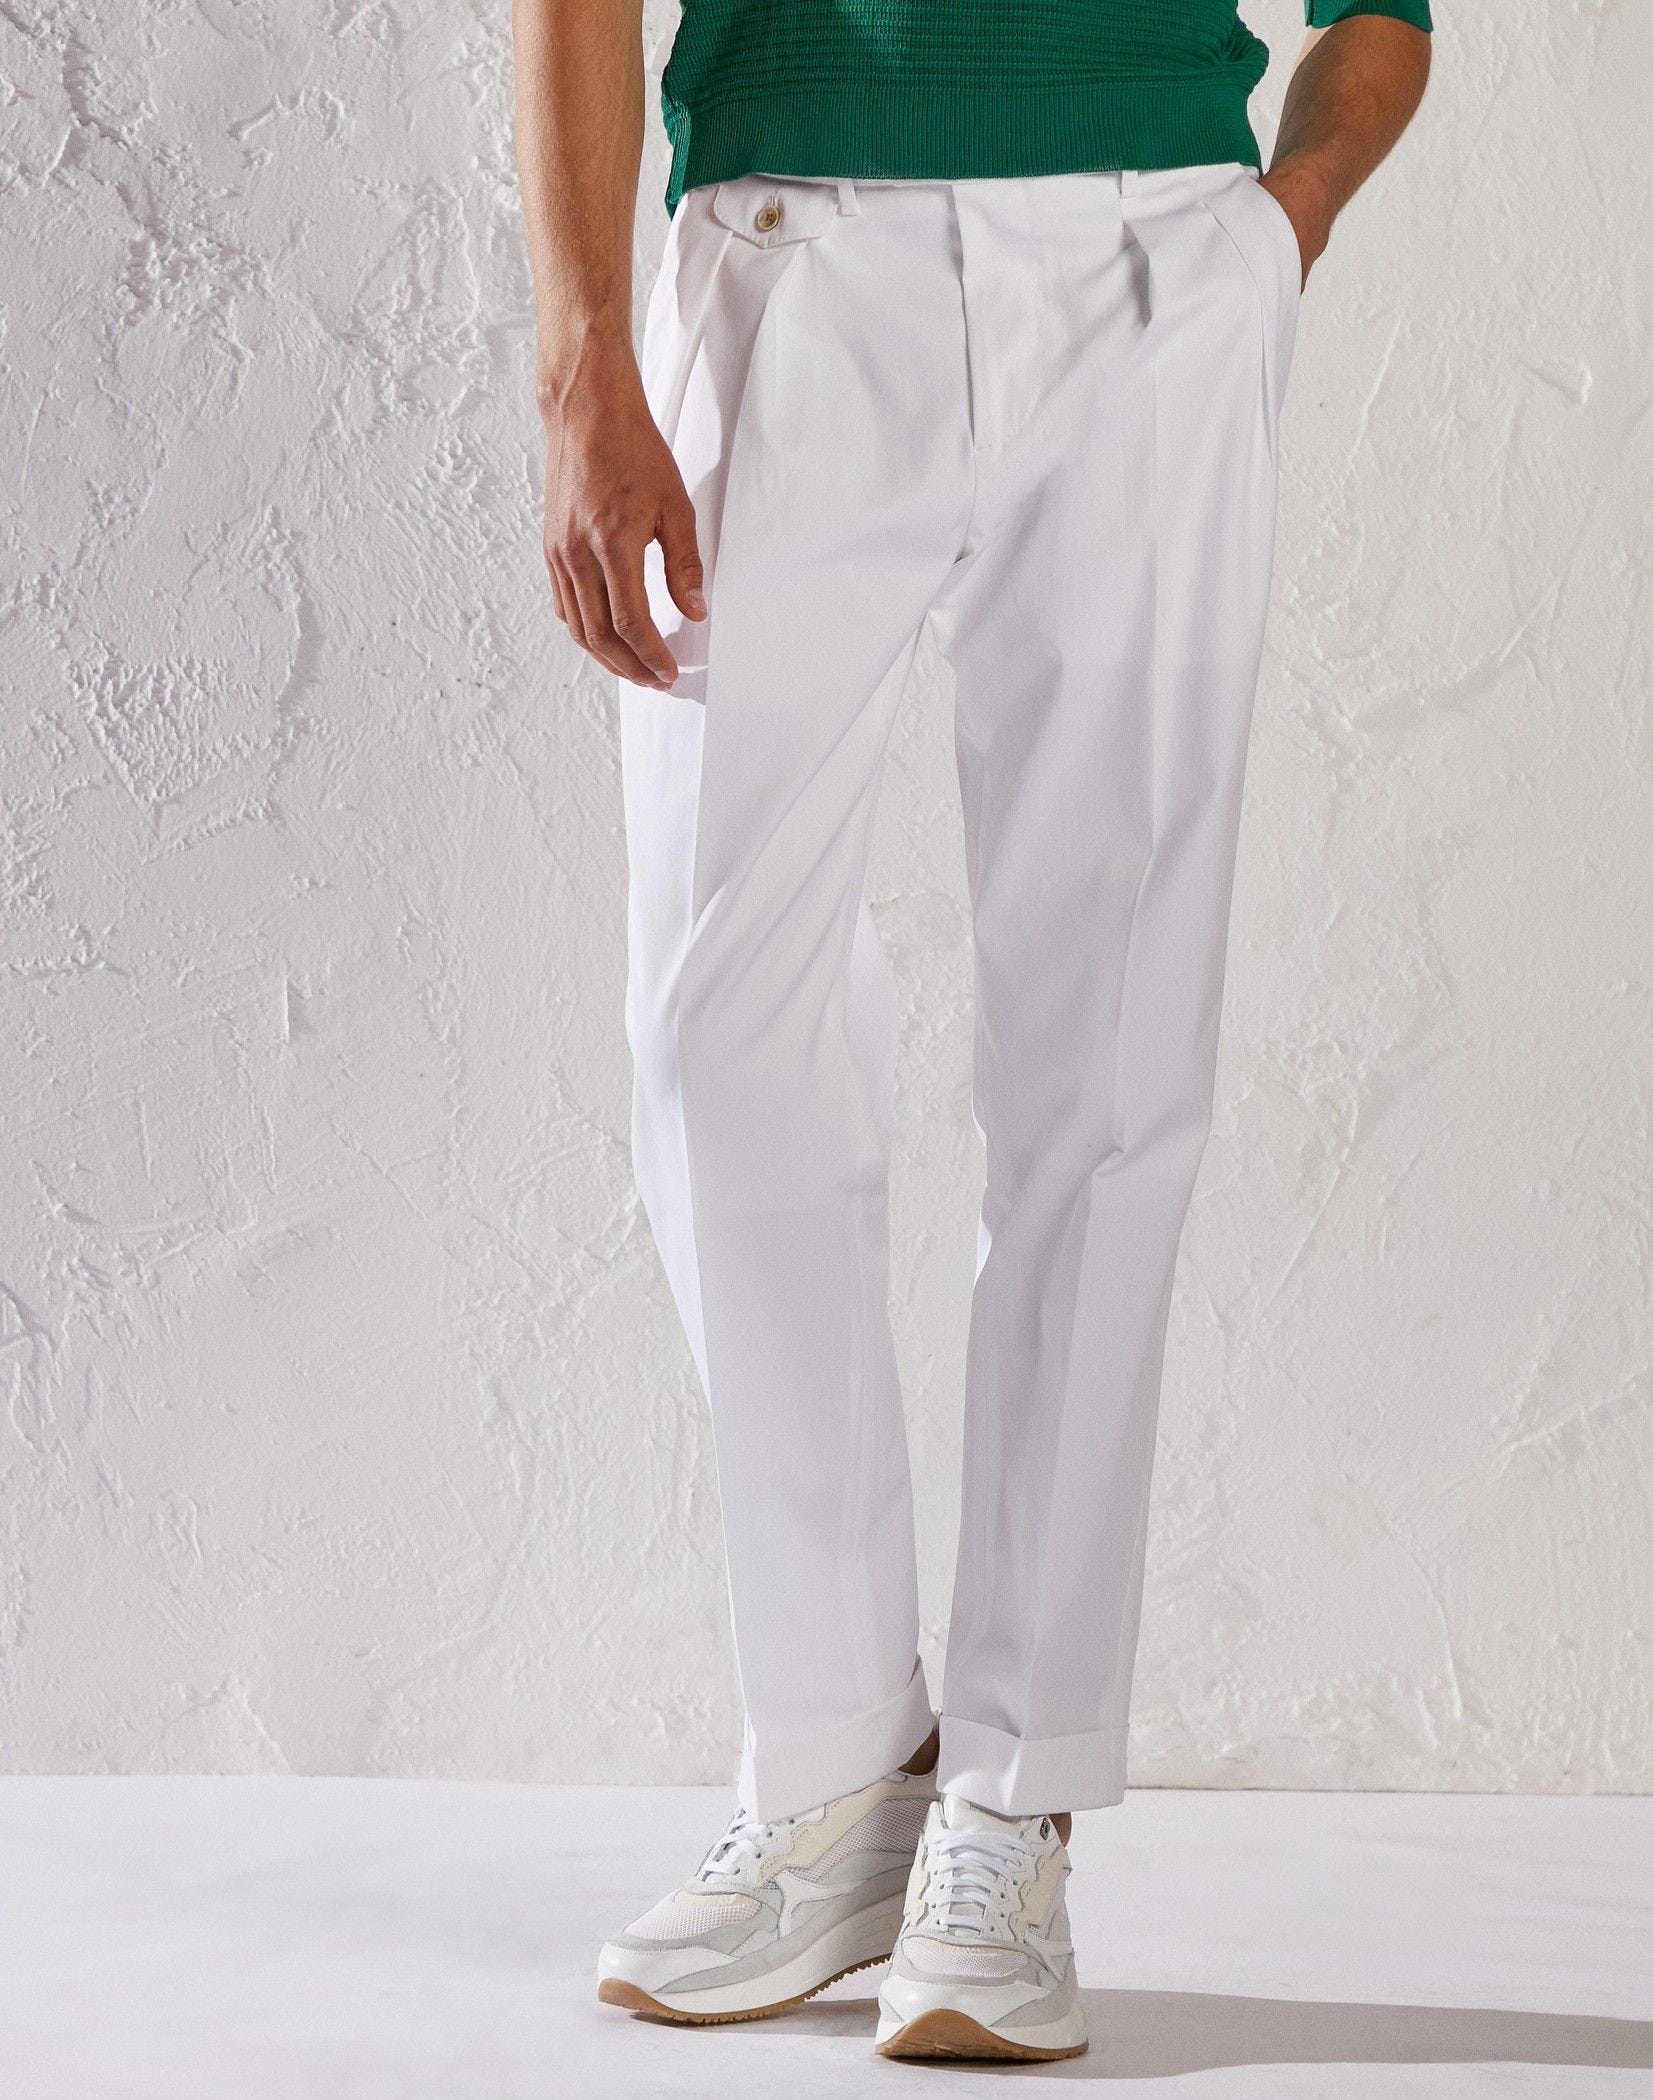 White trousers - Luigi Lardini capsule